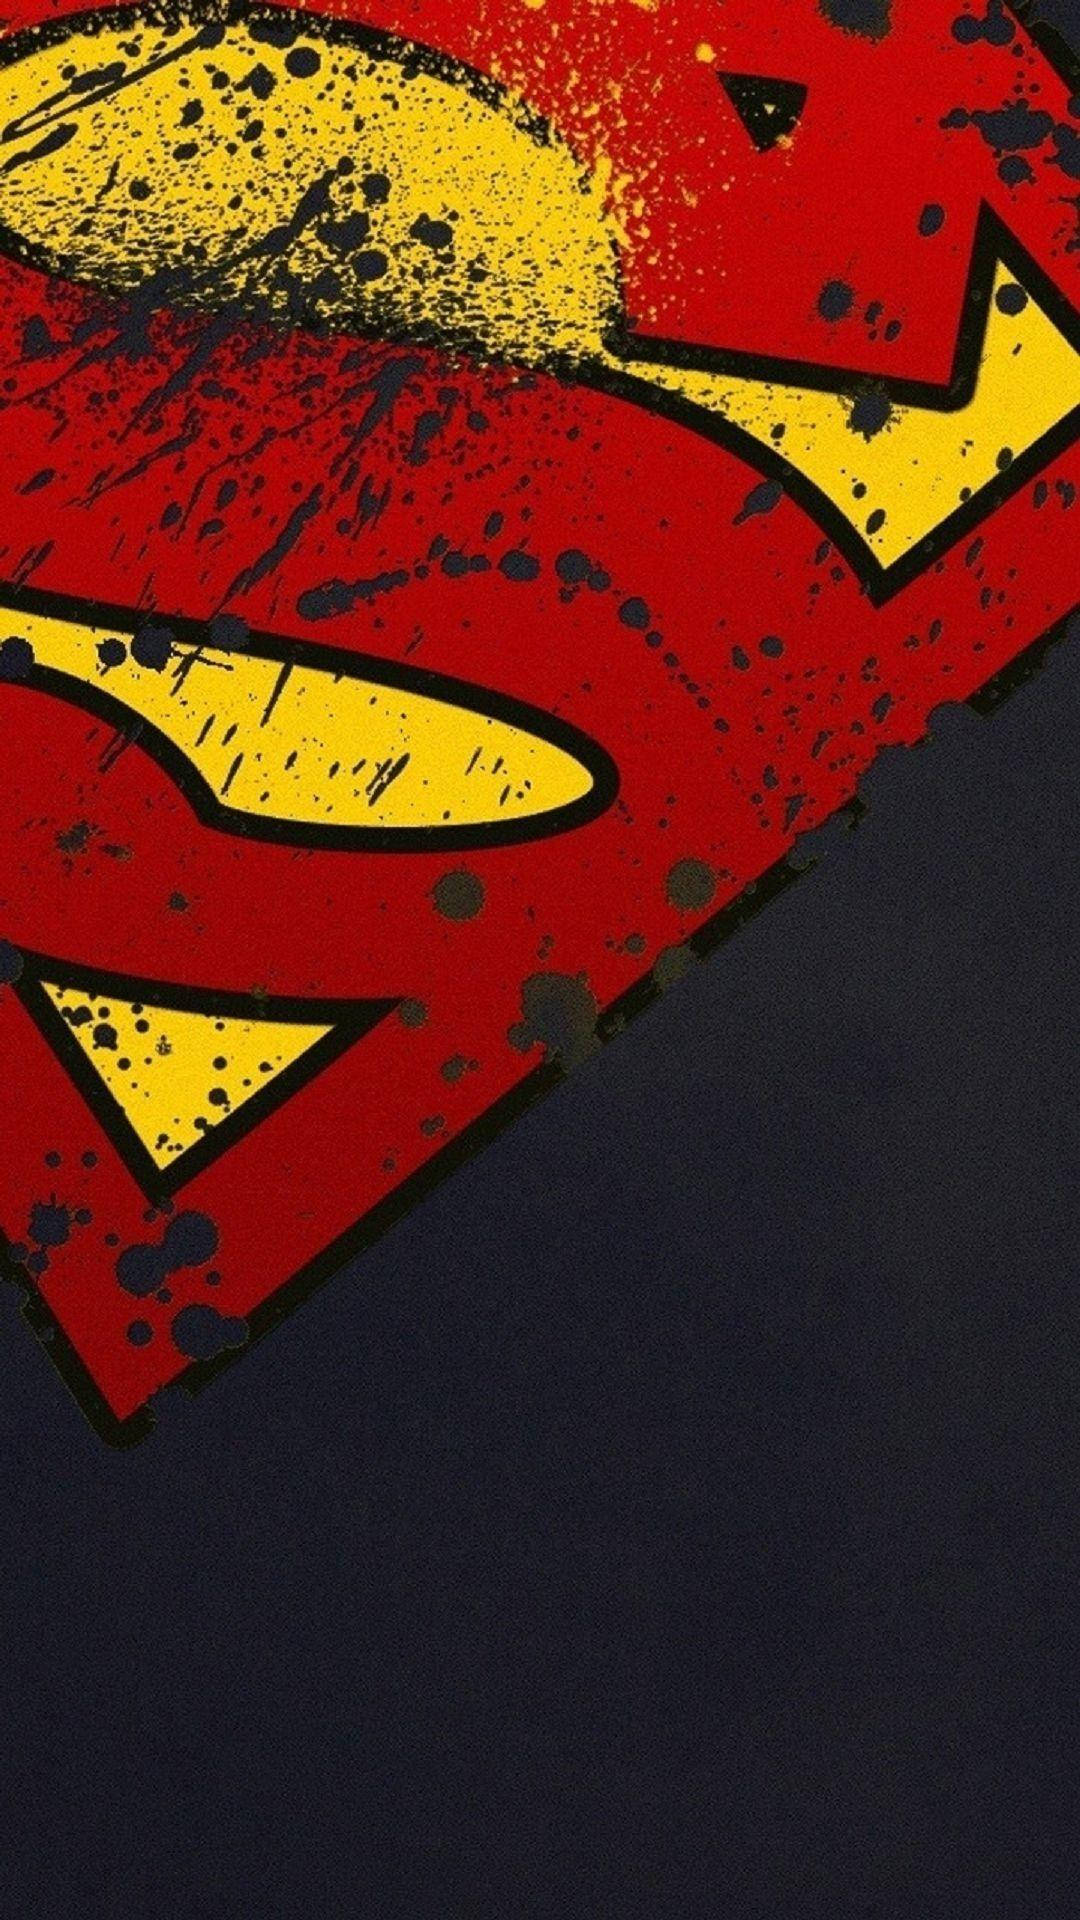 Caption: Valiant Superman Symbol On Iphone Background Background